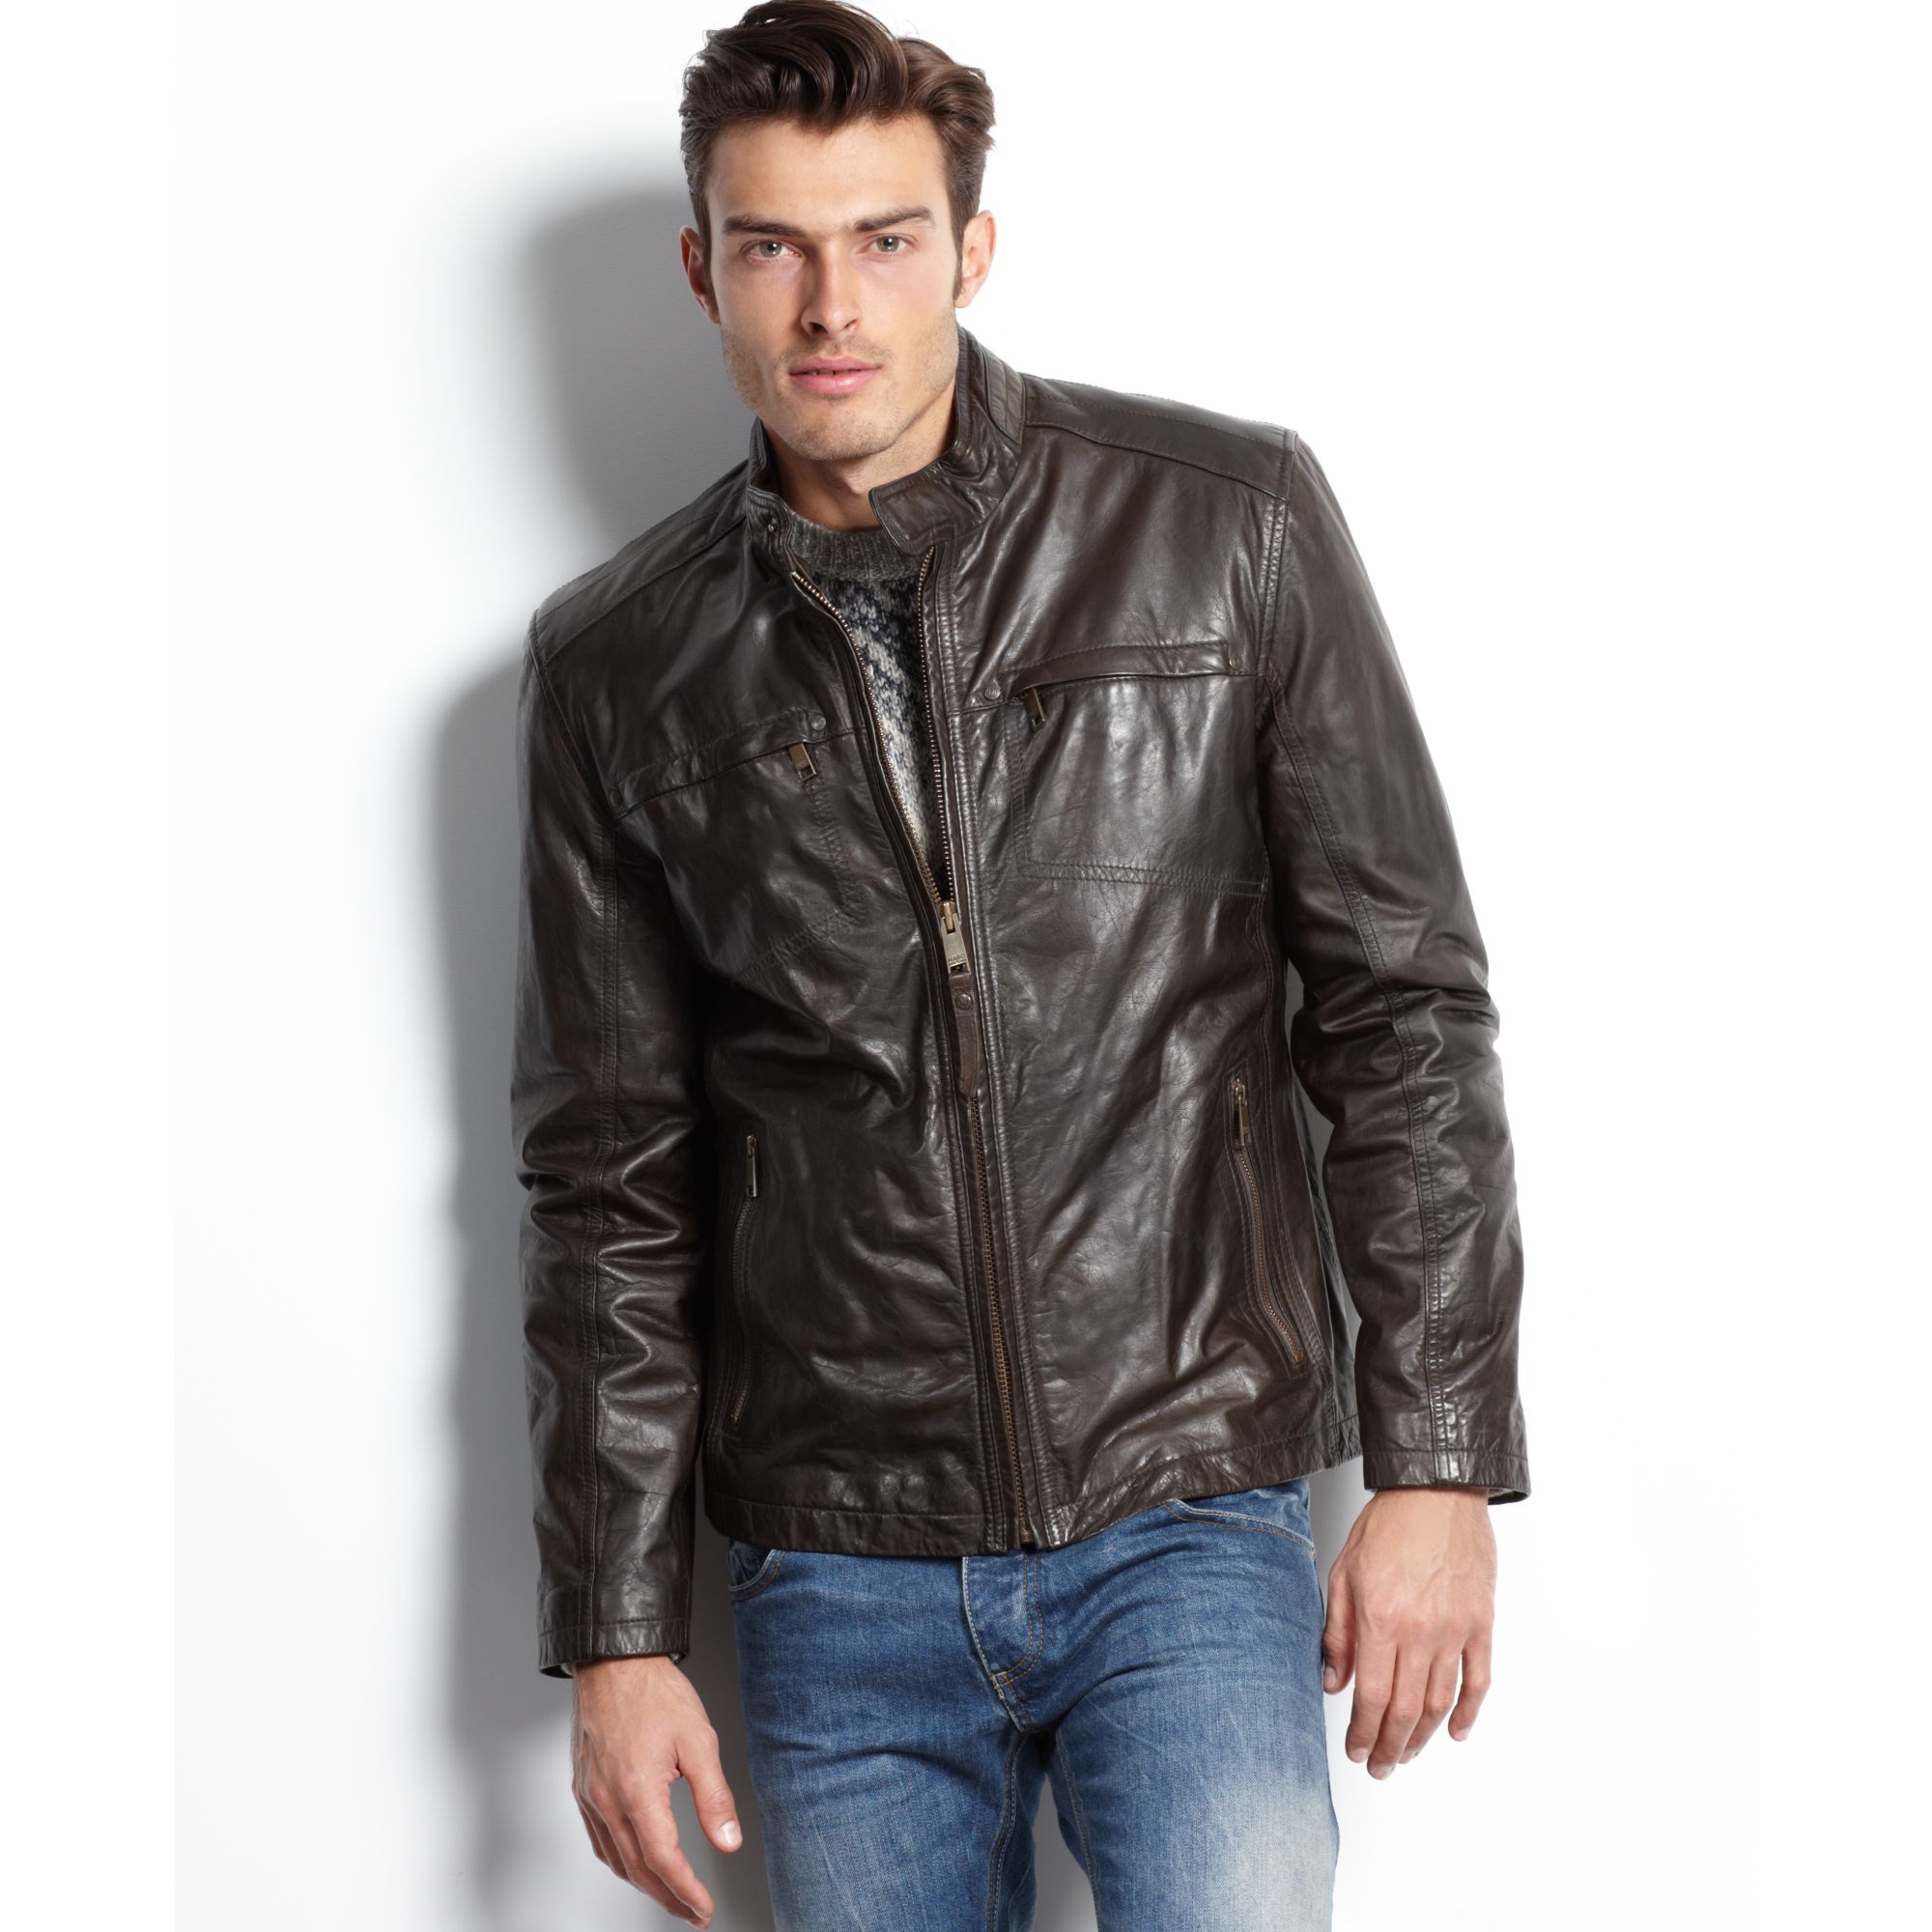 Купить куртку классику мужскую. Кожаная куртка Marc New York XL. CA no 57151 Marc New York Jacket Leather. Кожаный бомбер Levis. Marc Jacobs мужская кожаная куртка.